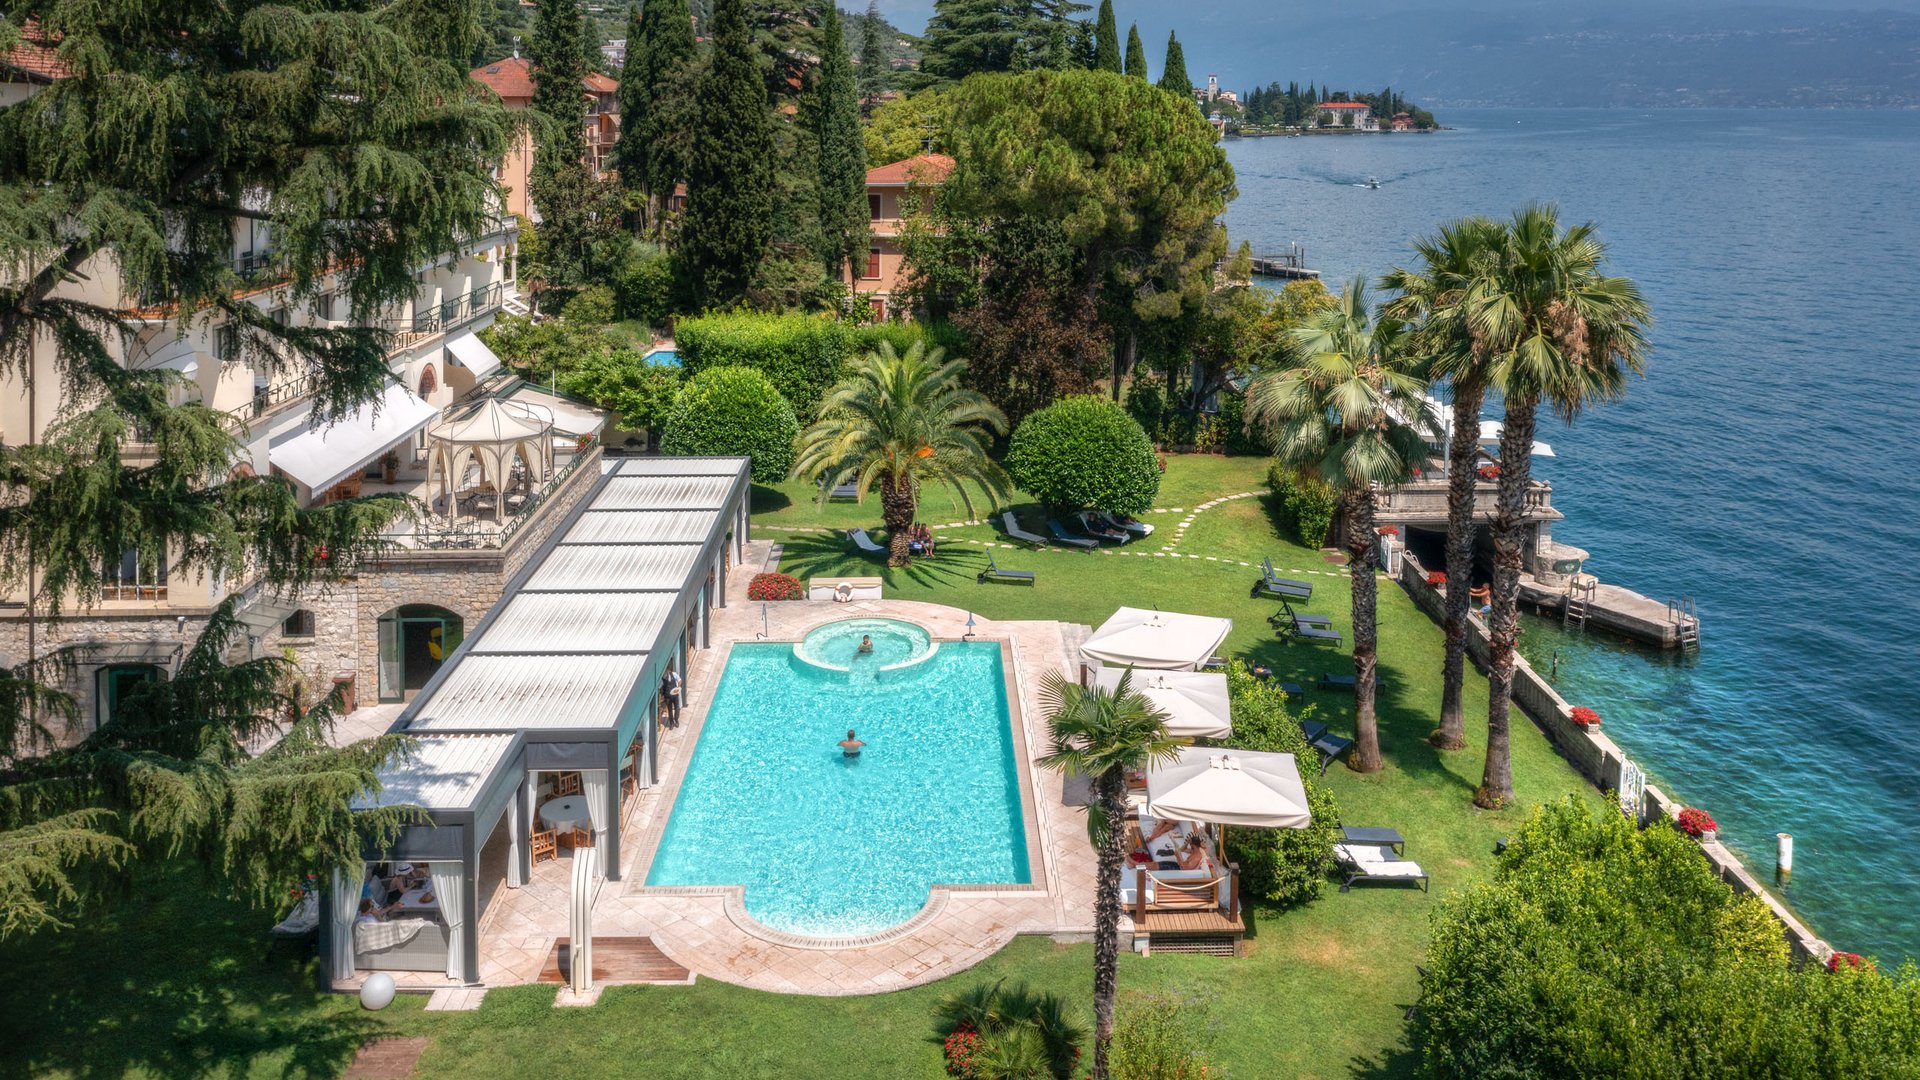 Villa Capri – Gardasee: Ein Hotel direkt am See